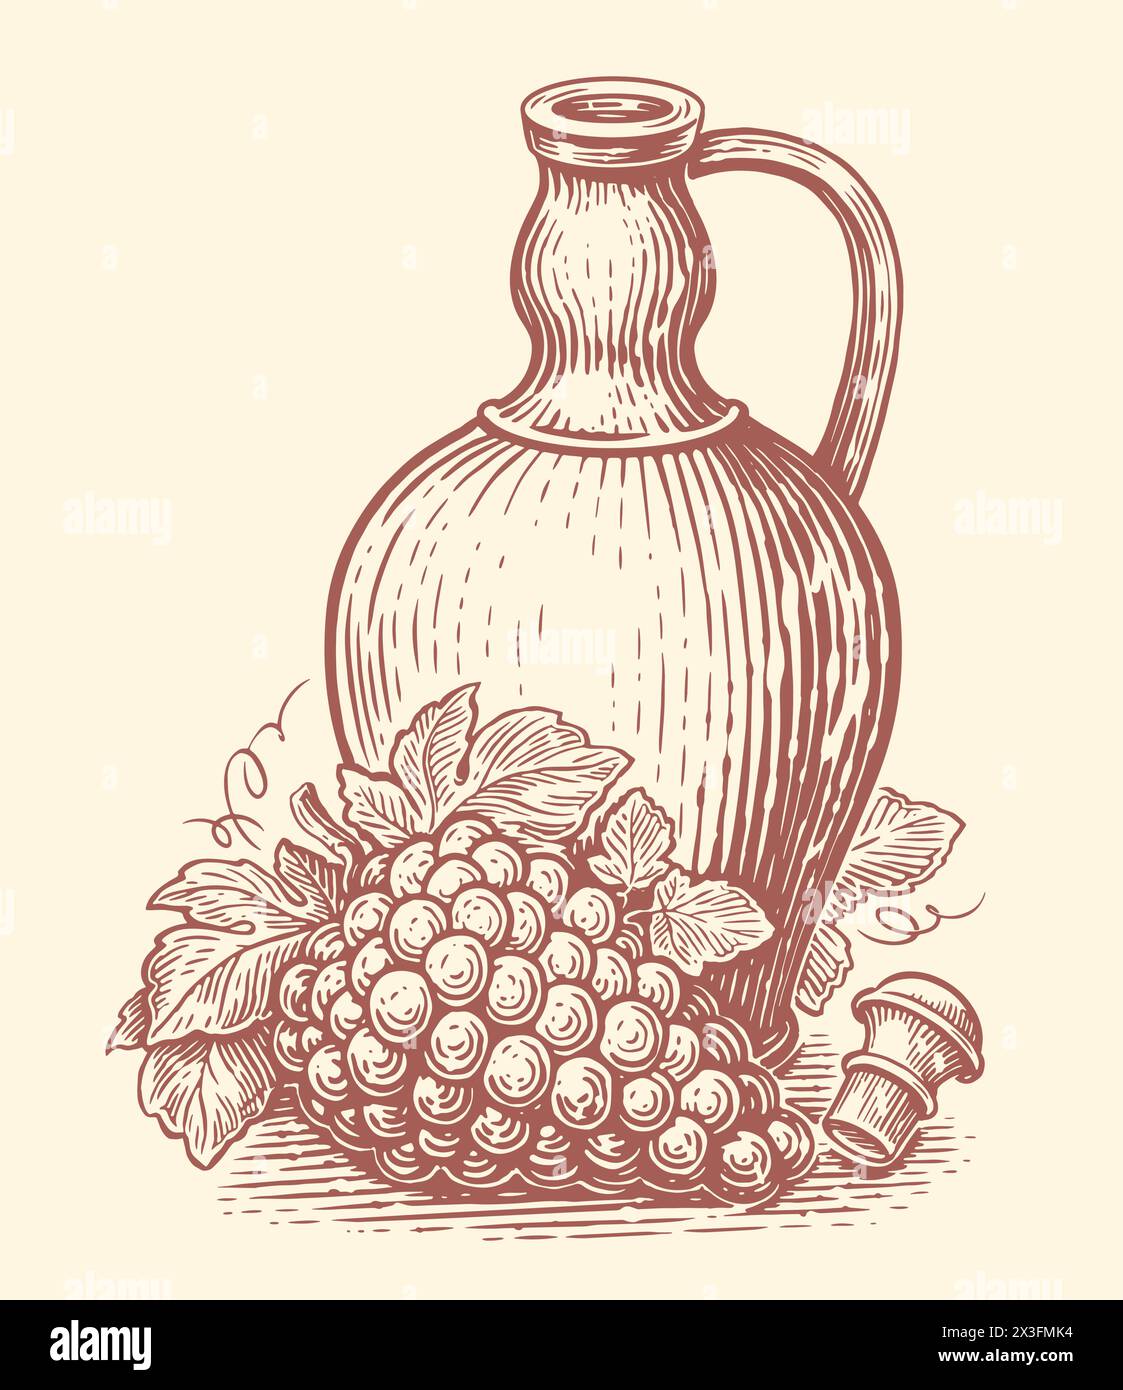 Tonkrug mit Weingetränk und Trauben. Weinherstellung, Skizze des Weinguts. Handgezeichnete Vintage-Vektor-Illustration Stock Vektor